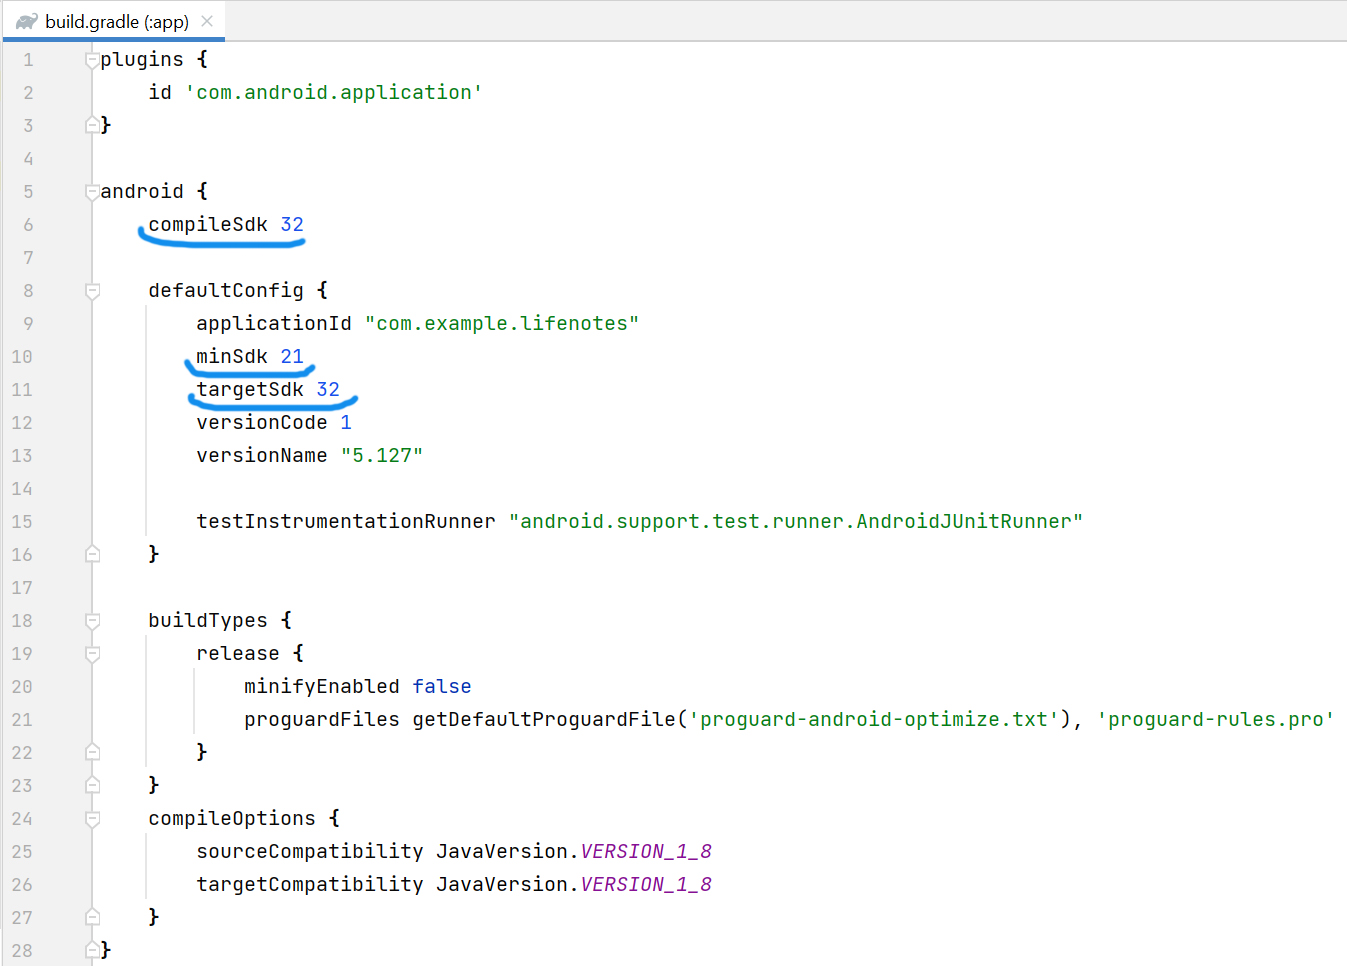 Скриншот установки параметров compileSdk, minSdk и targetSdk в build.gradle в IntelliJ IDEA